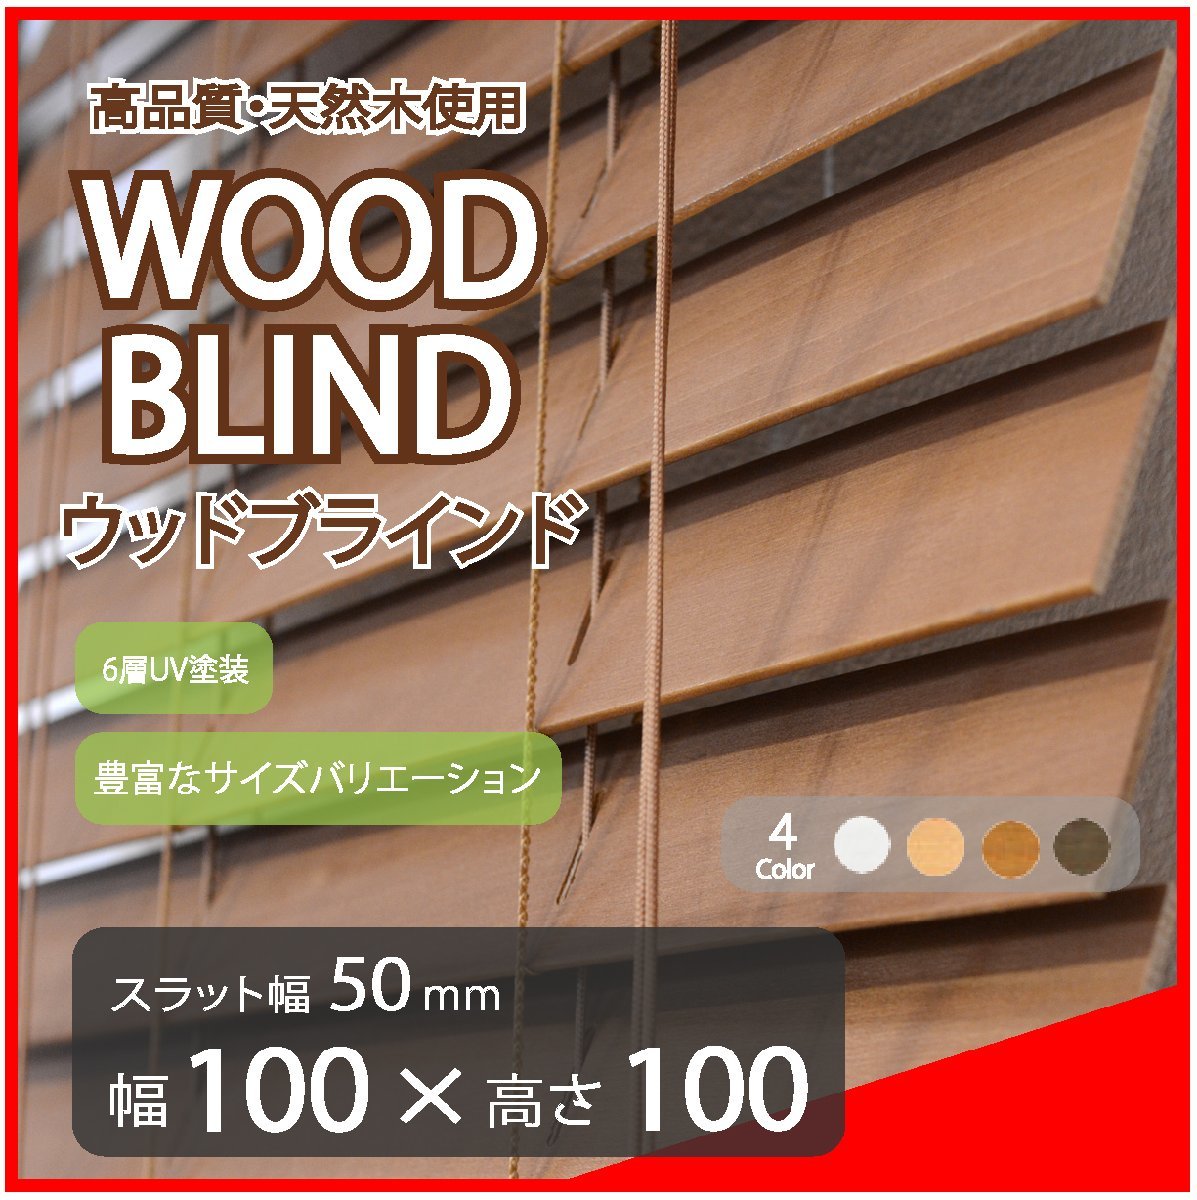 高品質 ウッドブラインド 木製 ブラインド 既成サイズ スラット(羽根)幅50mm 幅100cm×高さ100cm ブラウン